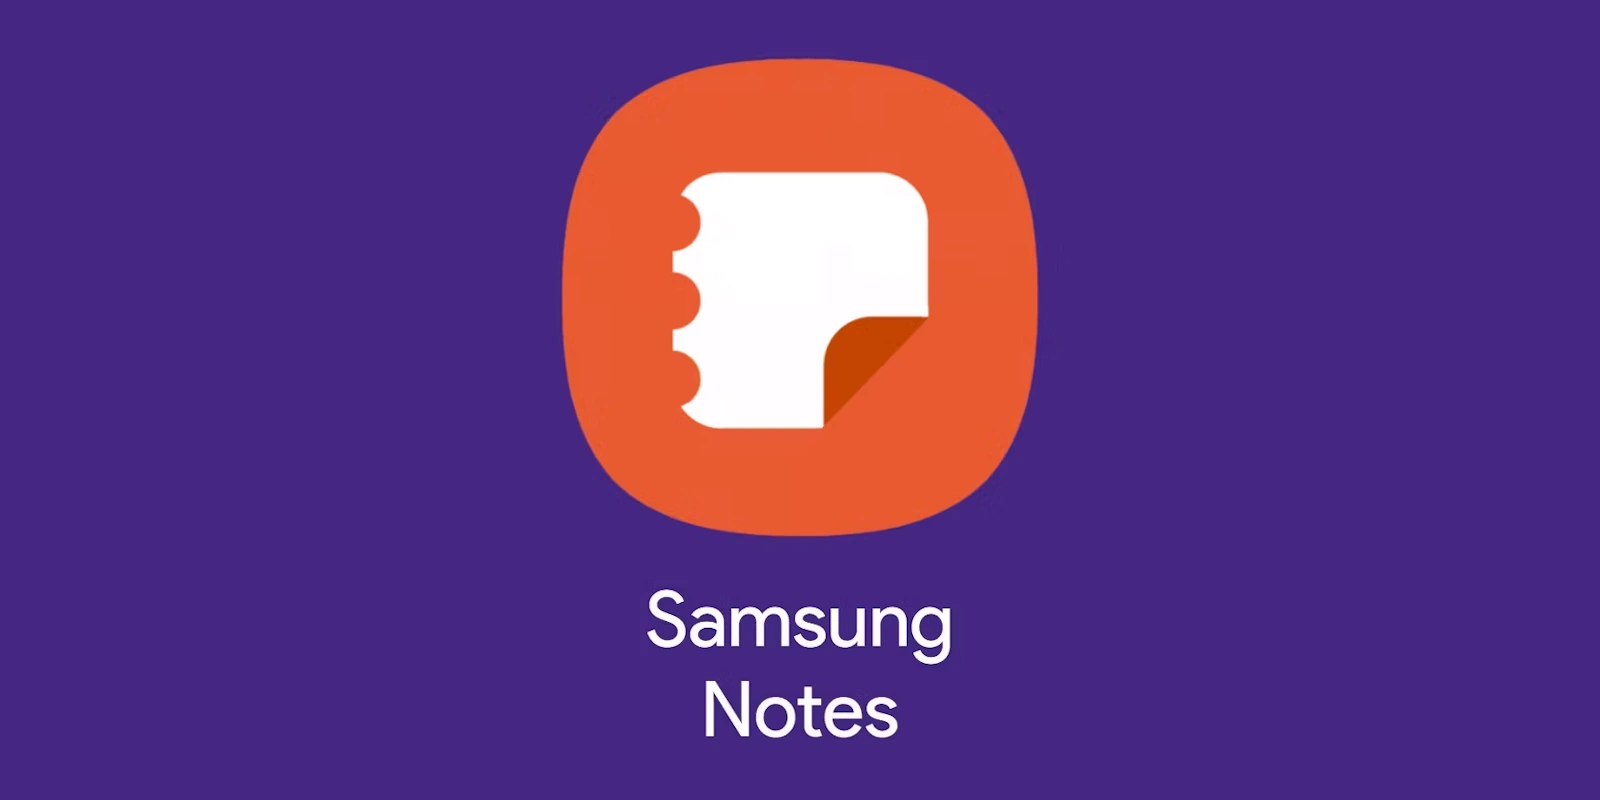 samsung notes app